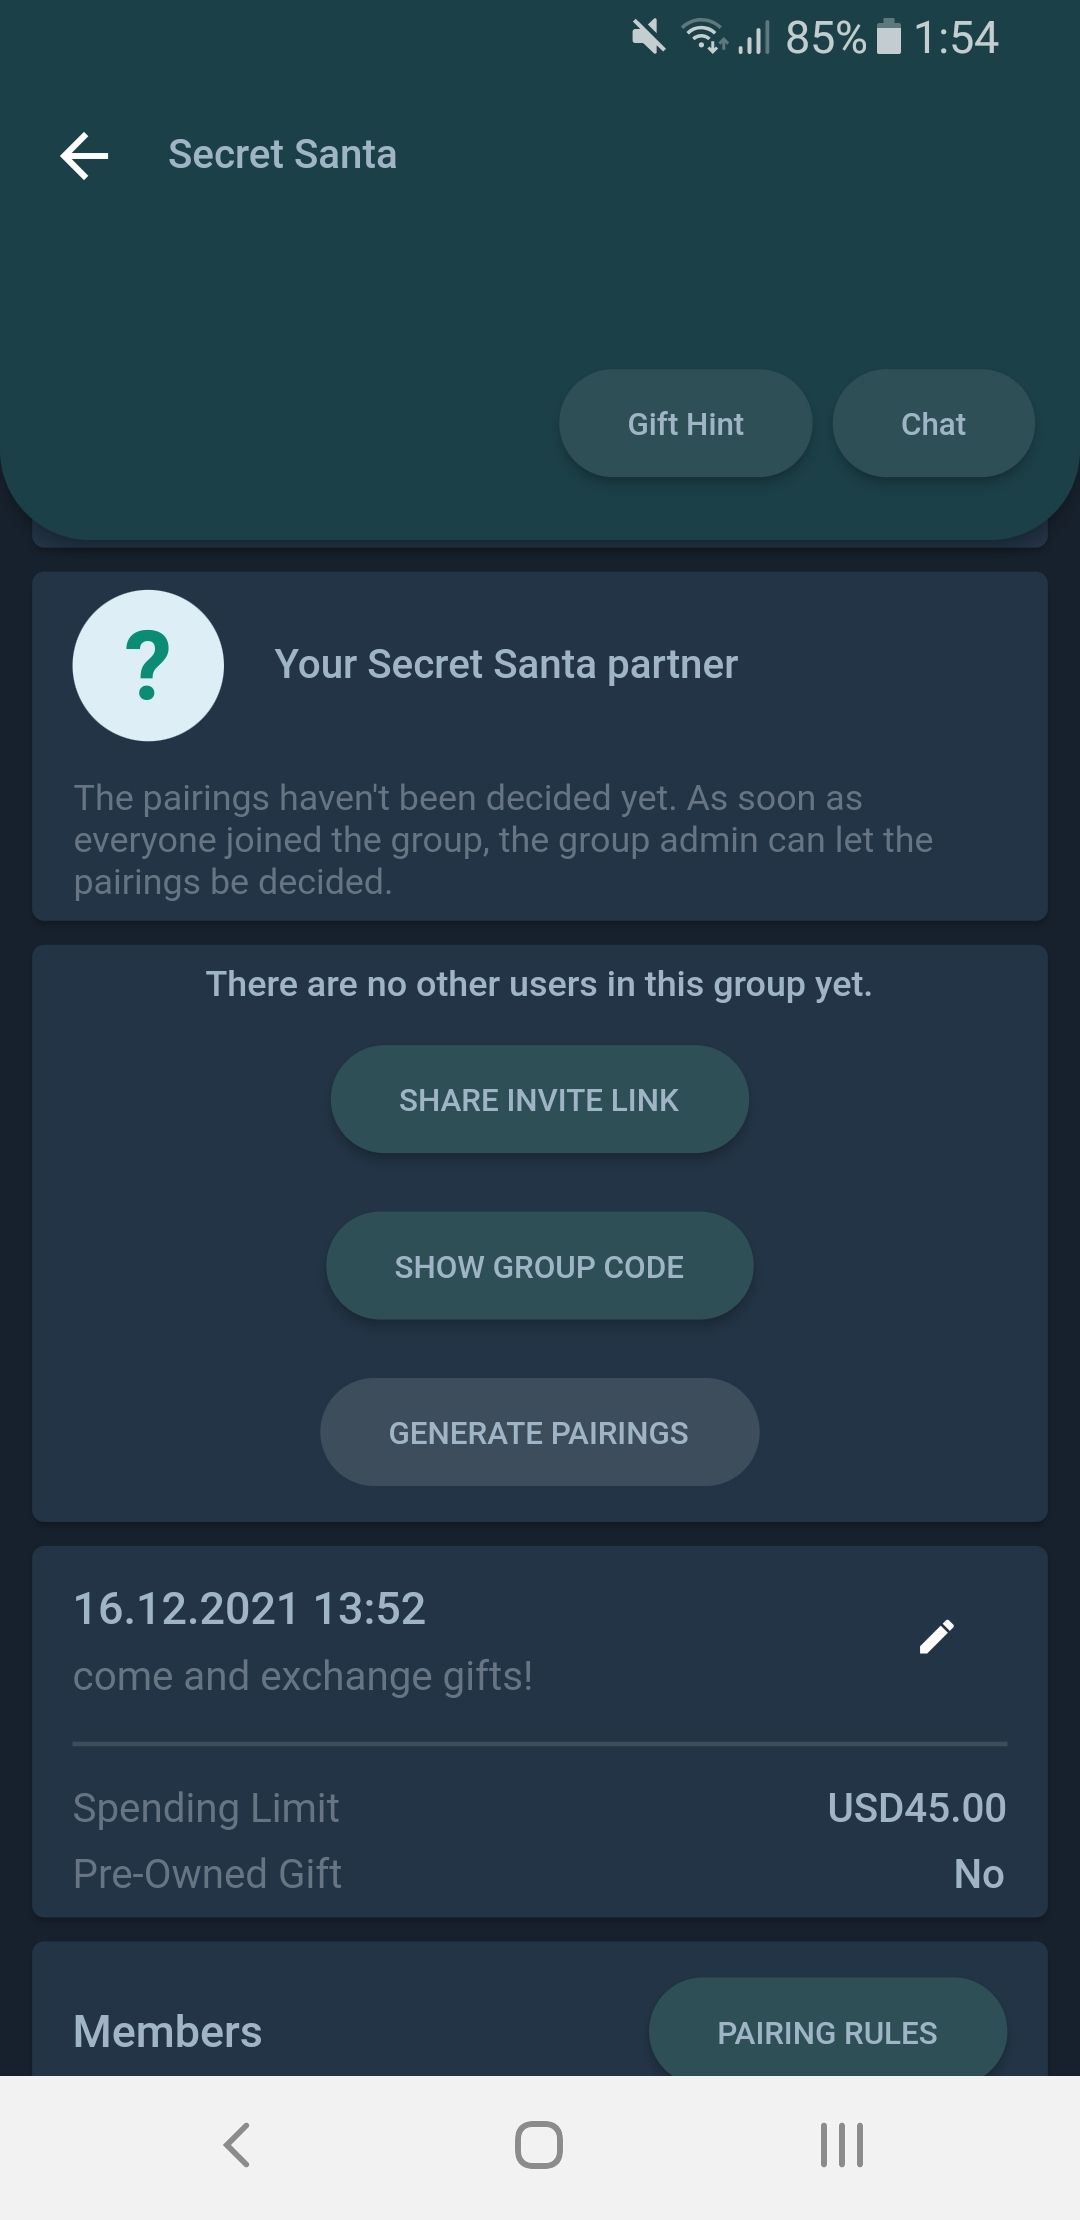 Secret Santa Gifts Under $20 That Don't Suck